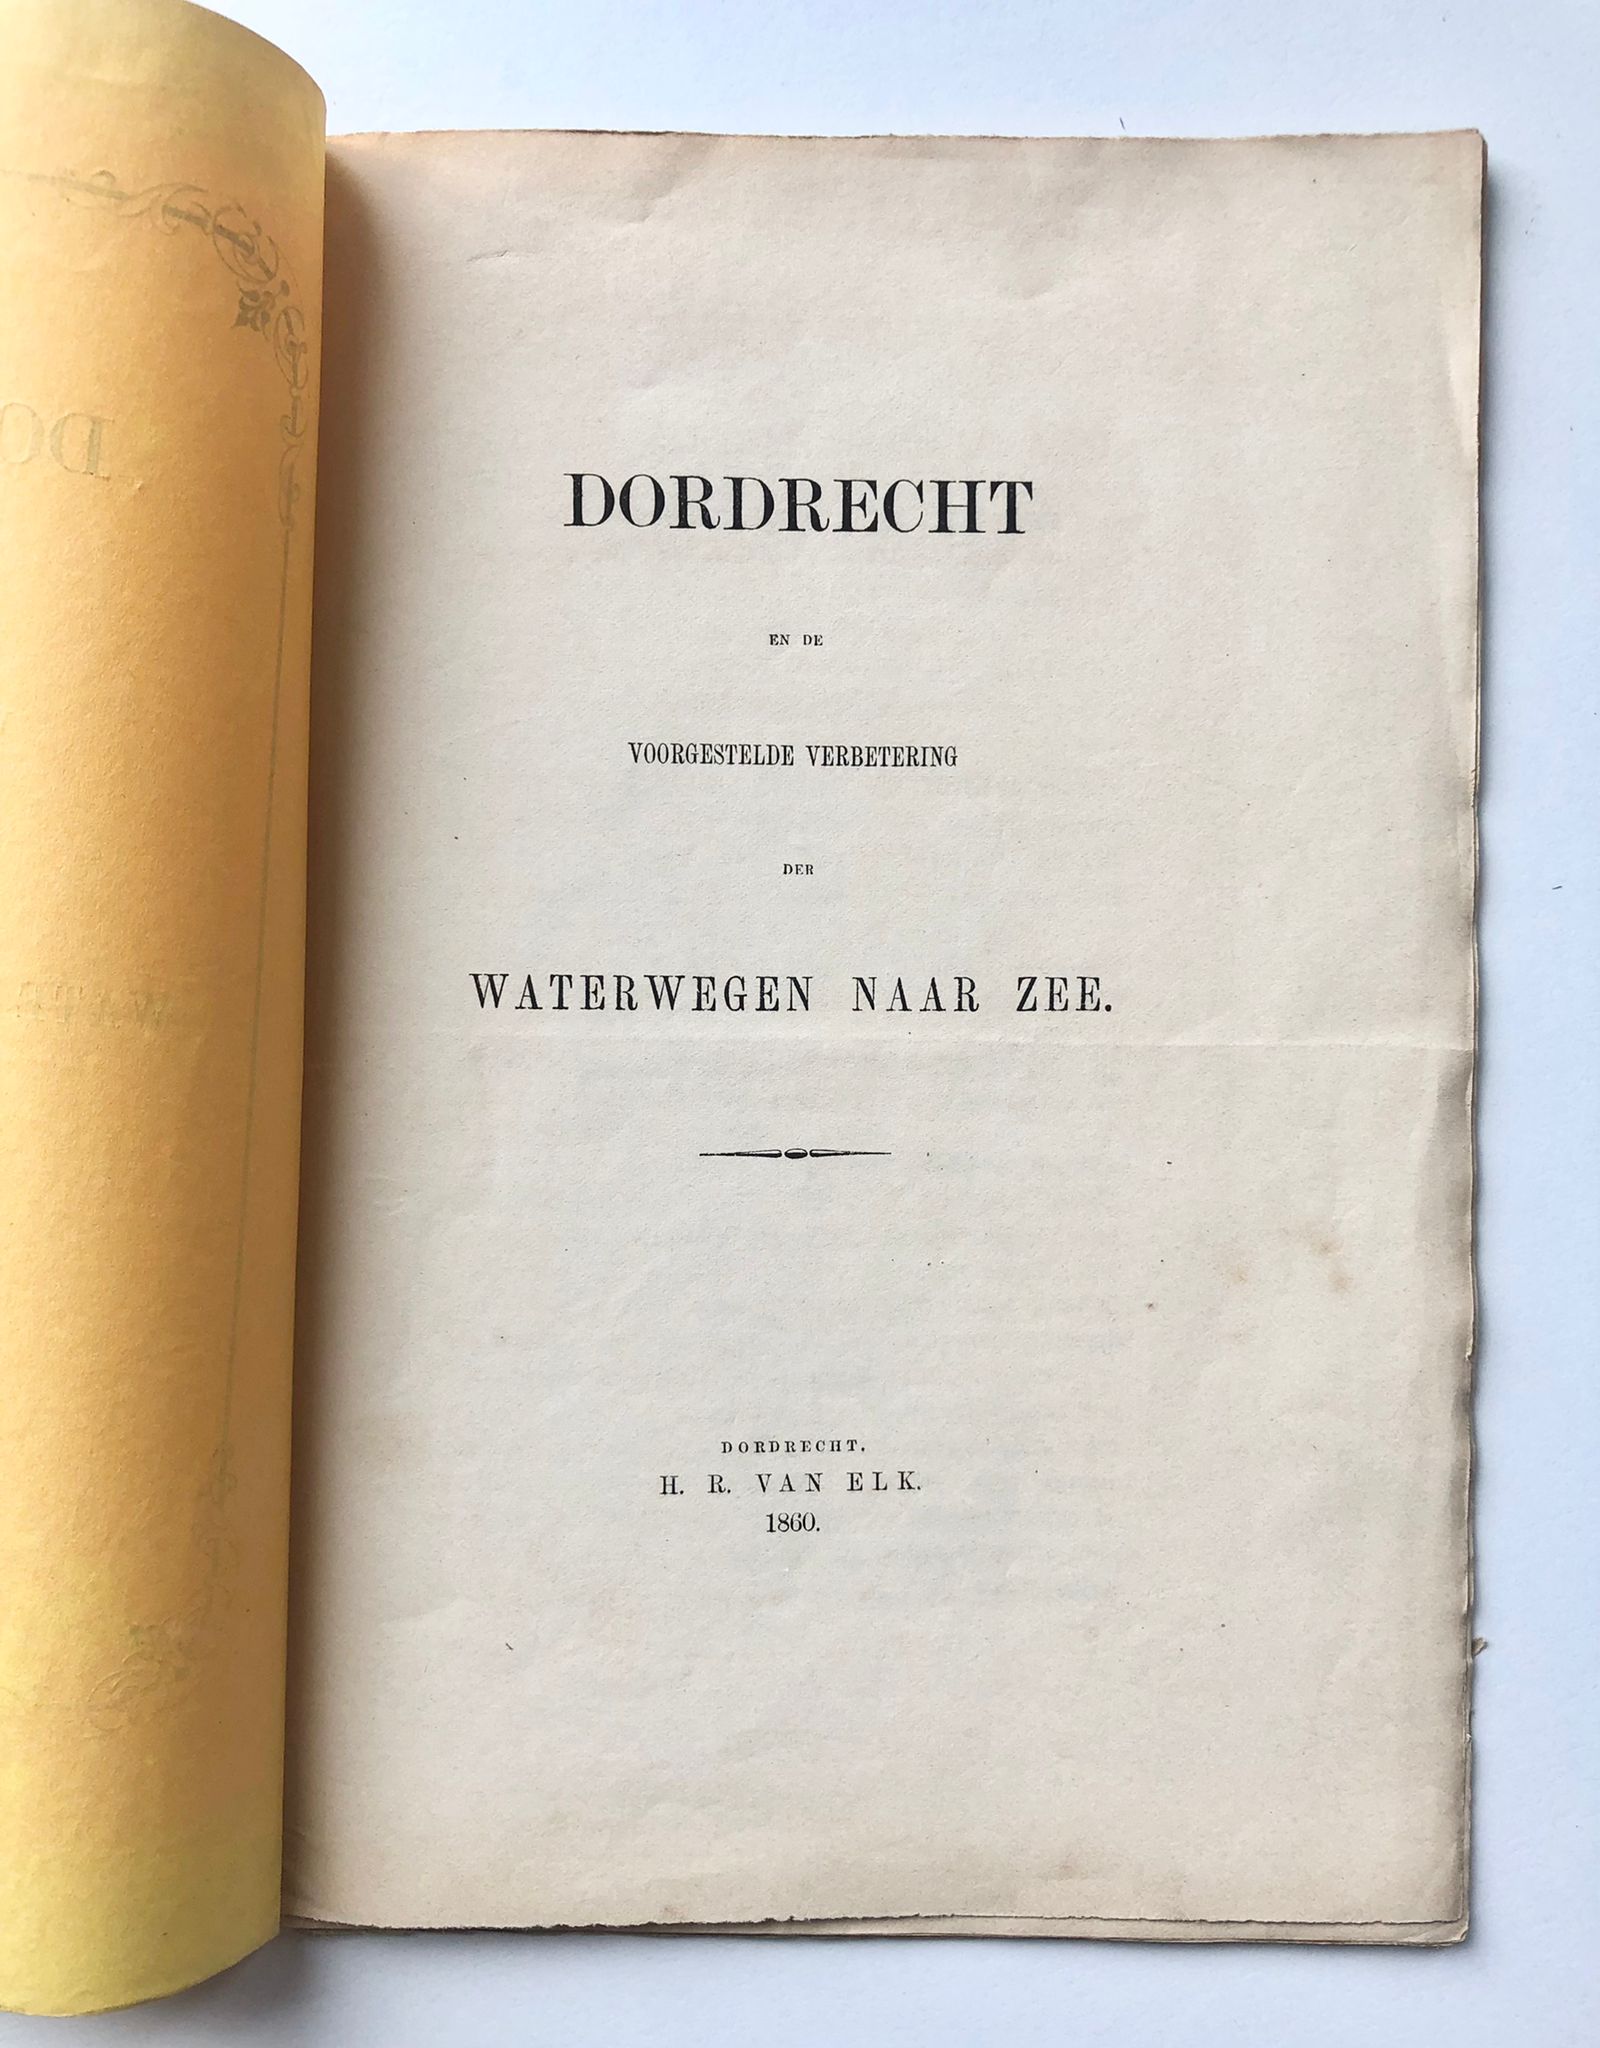 [Dordrecht, Zuid-Holland] Dordrecht en de voorgestelde verbetering der Waterwegen naar Zee, Door D. S. Dz. Den 3 December 1860, H. R. van Elk, Dordrecht, 1860, 29 pp.